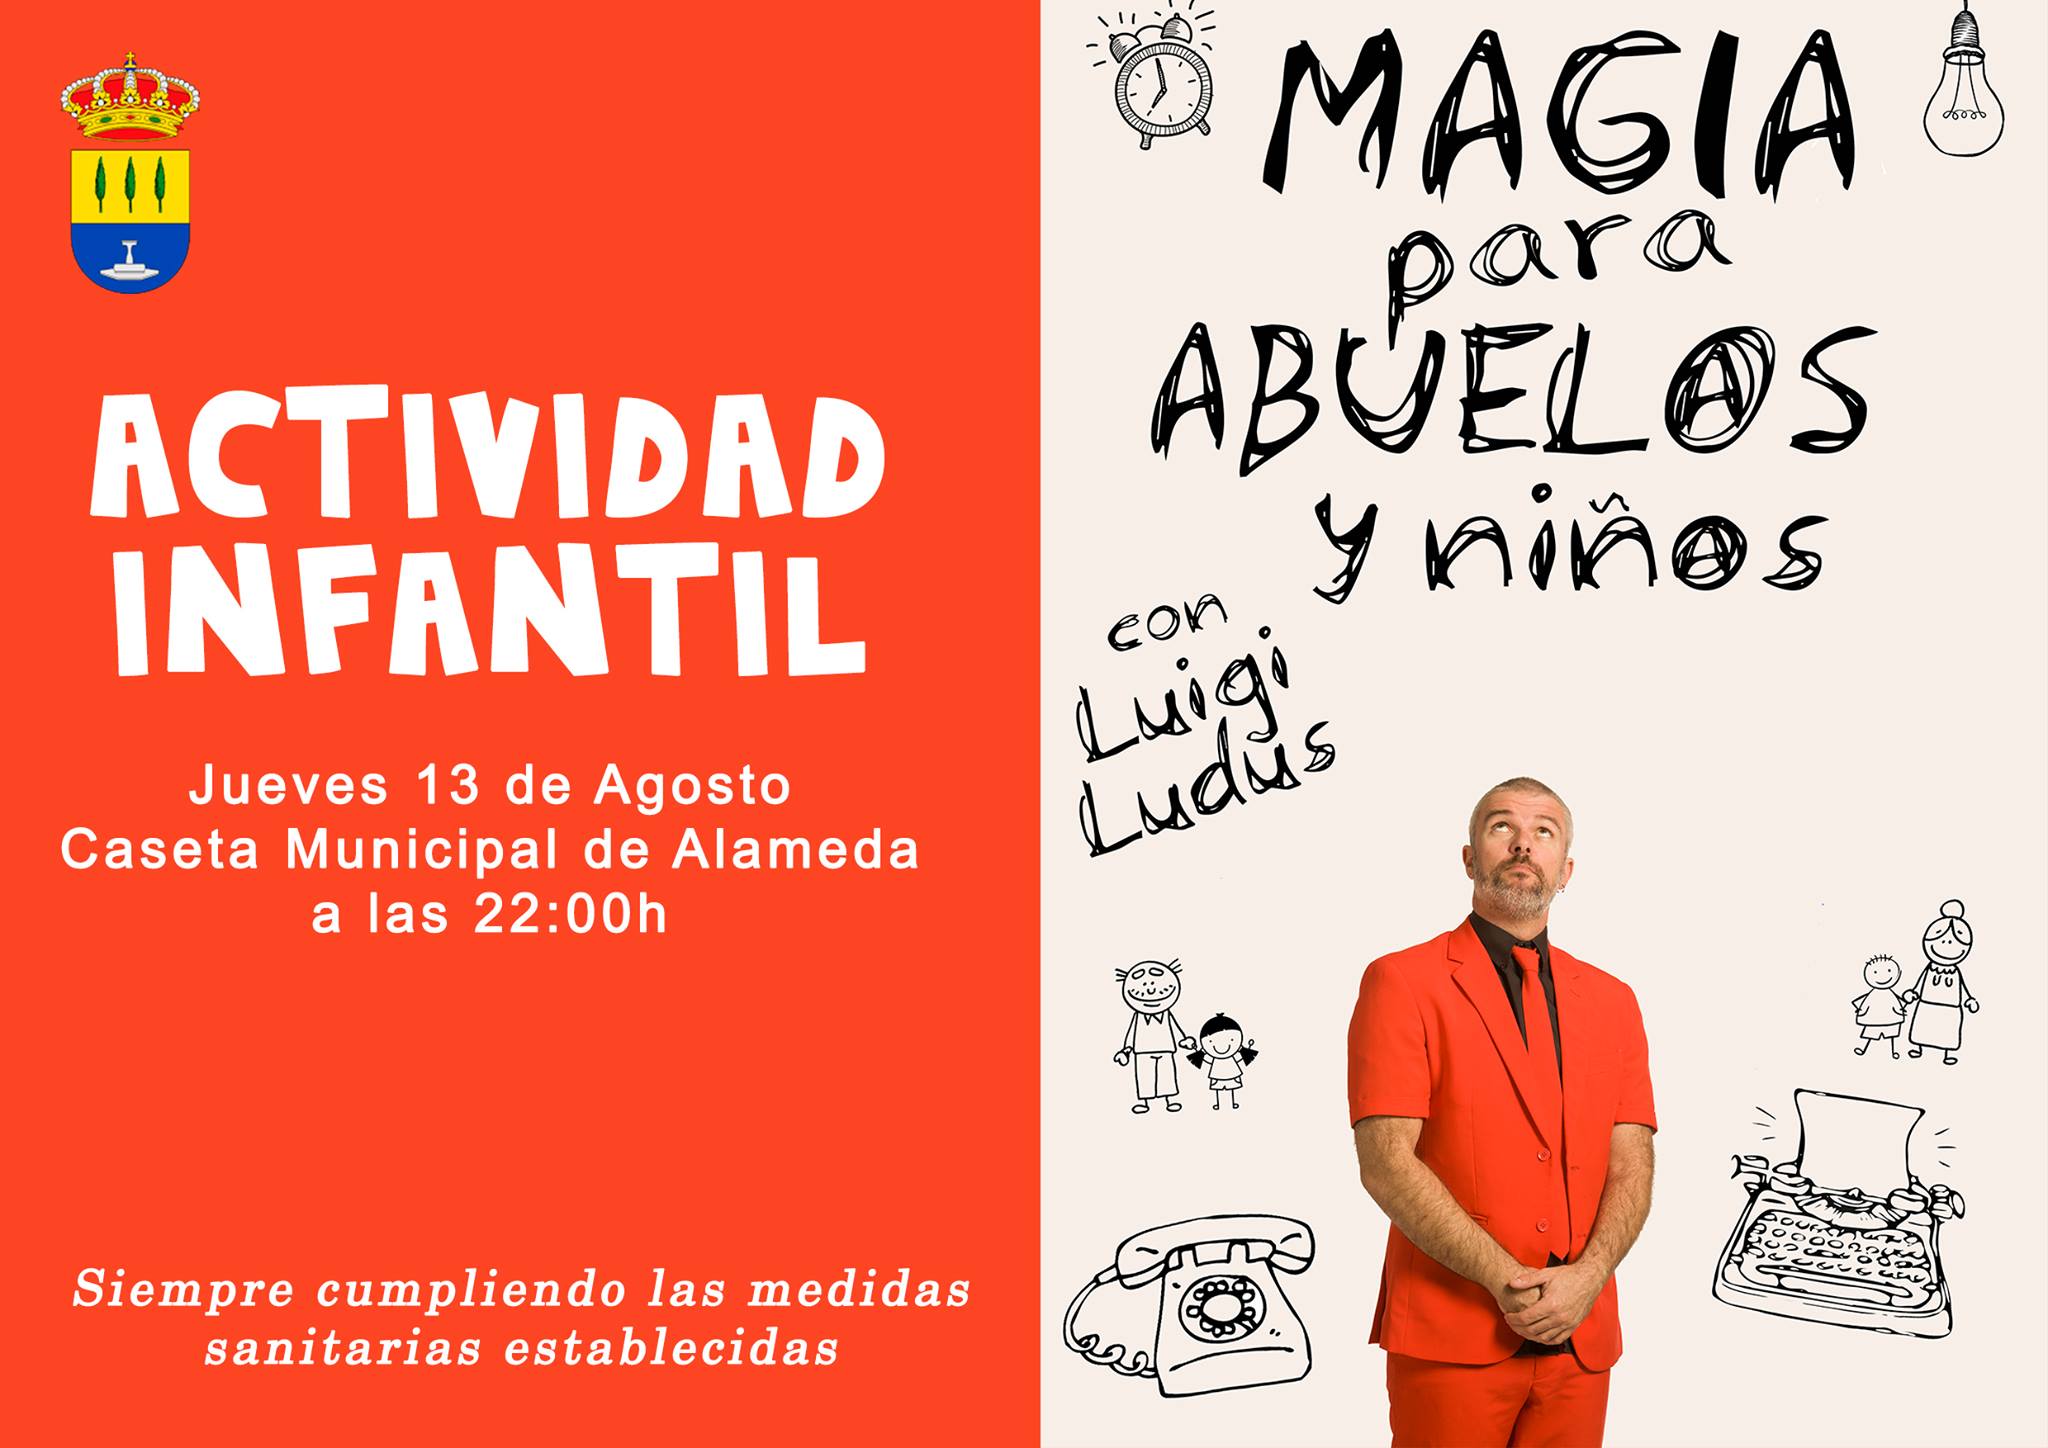 Magia para abuelos y niños 2020 - Alameda (Málaga)